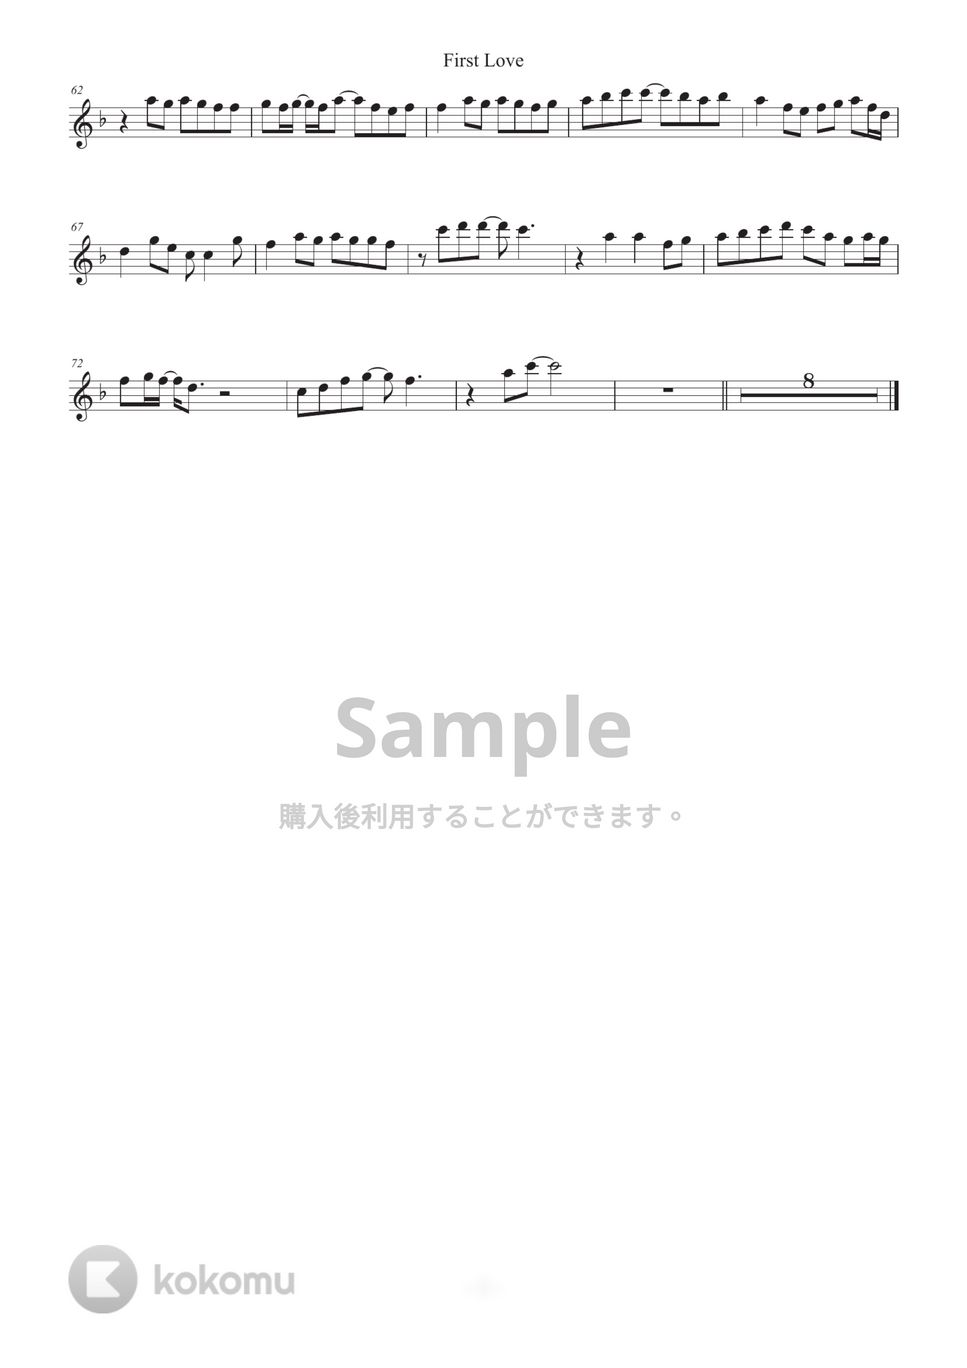 宇多田ヒカル - First Love (inE♭) by HiRO Sax